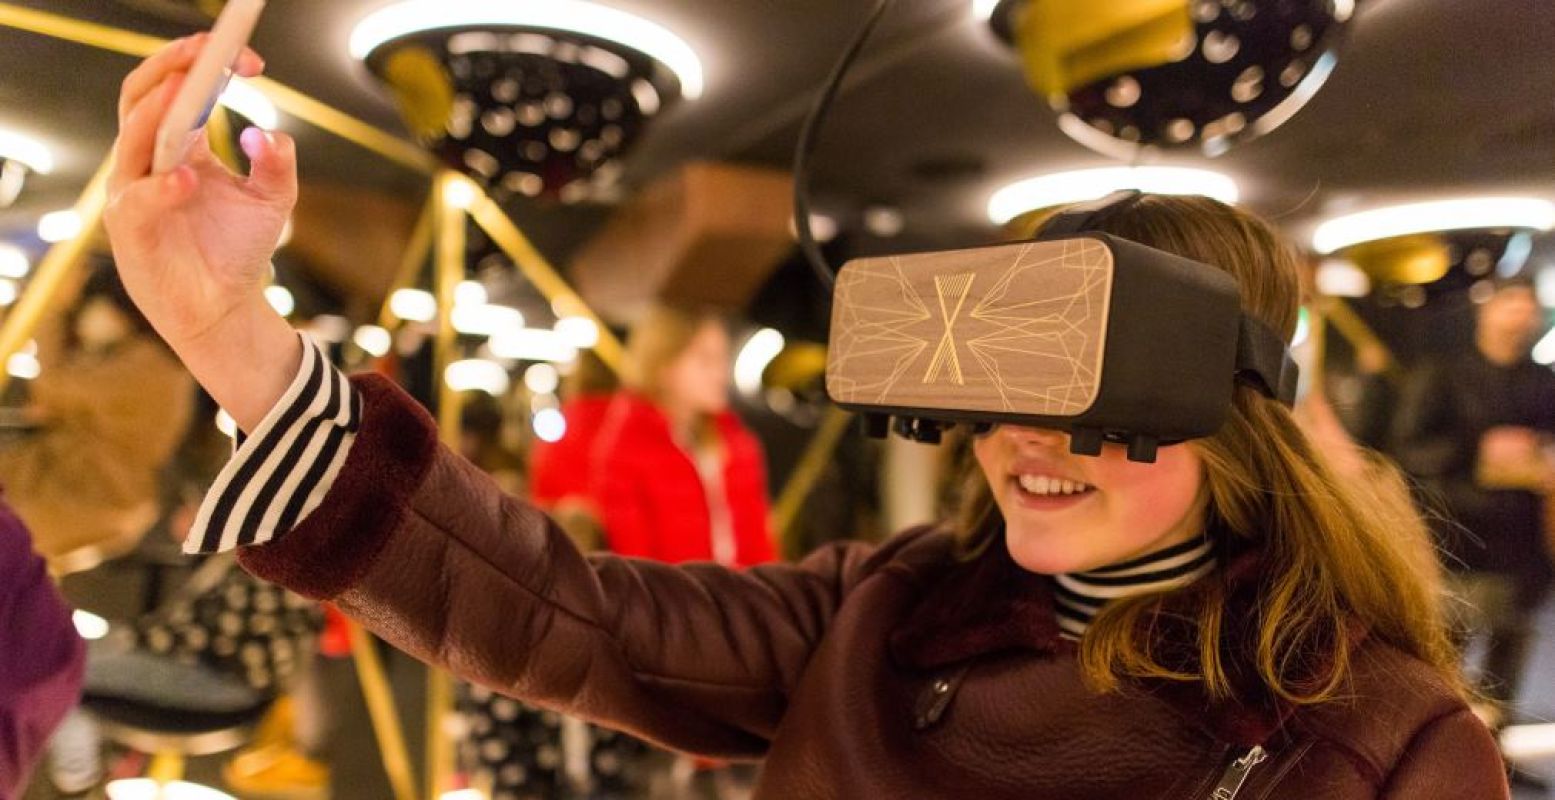 Zet de virtual reality bril op en reis af naar vroeger. Foto: Scheepvaartmuseum